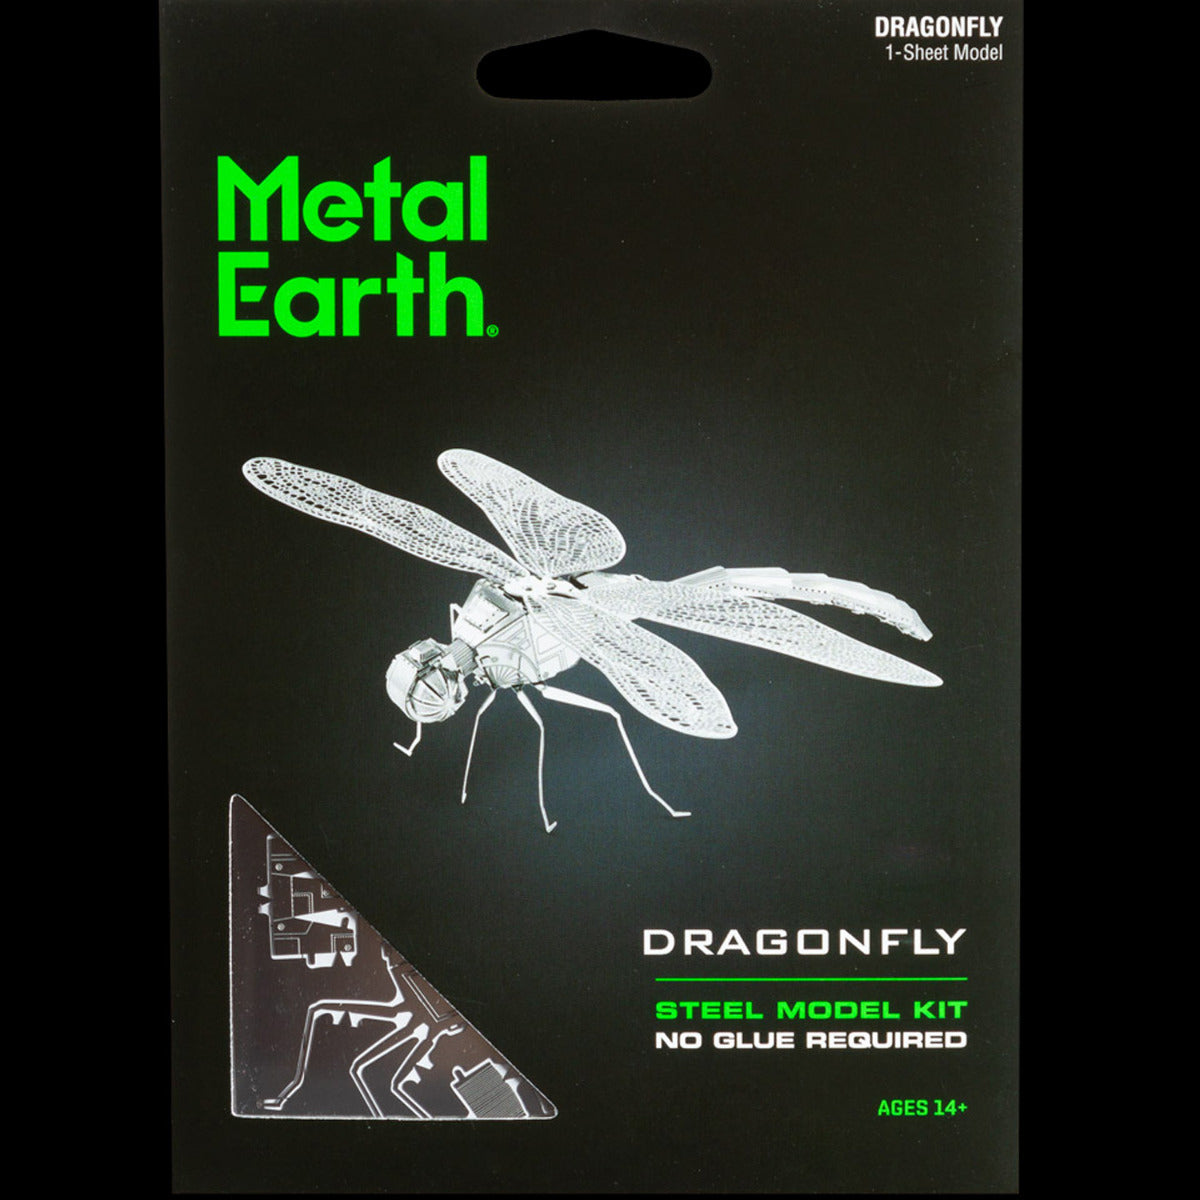 Metal Earth Metallbausätze MMS064 Dragonfly Libelle Metall Modell